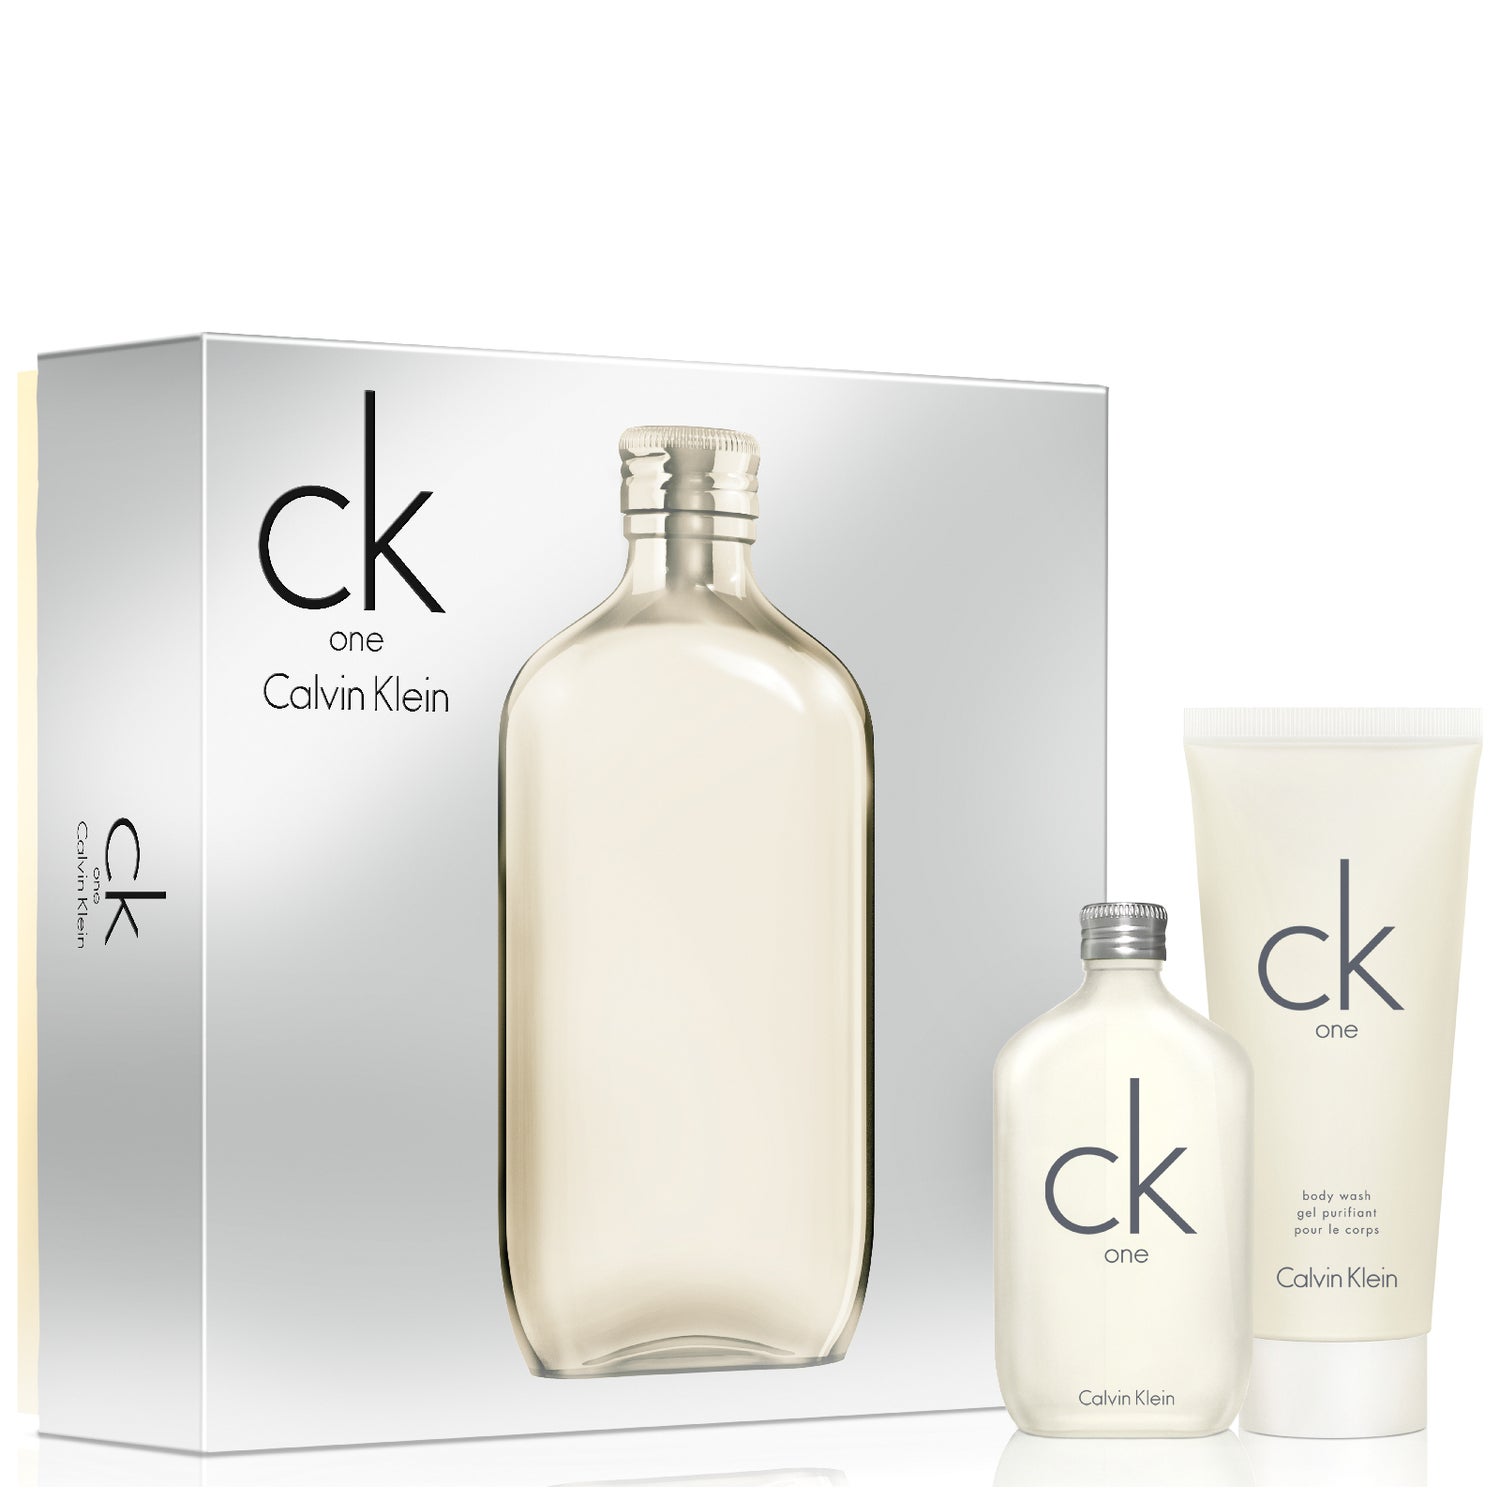 Calvin Klein CK One Eau de Toilette Coffret Set - Entrega GRÁTIS